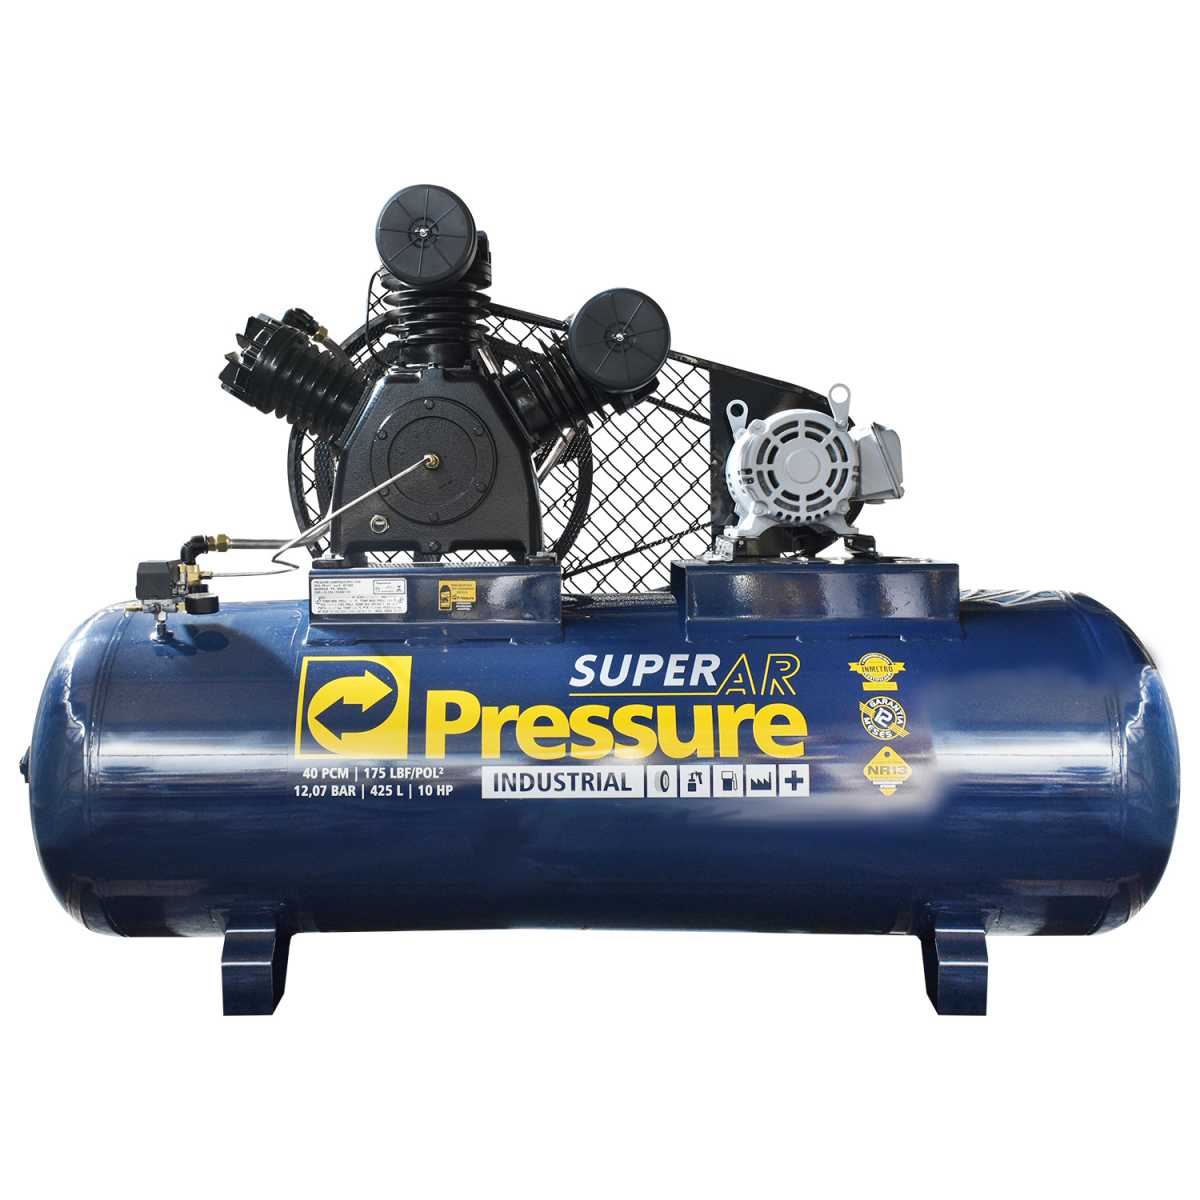 Compressor Pressure Super Ar 40/425 – 40 Pés – 425 Litros – 175 Libras – Trifásico